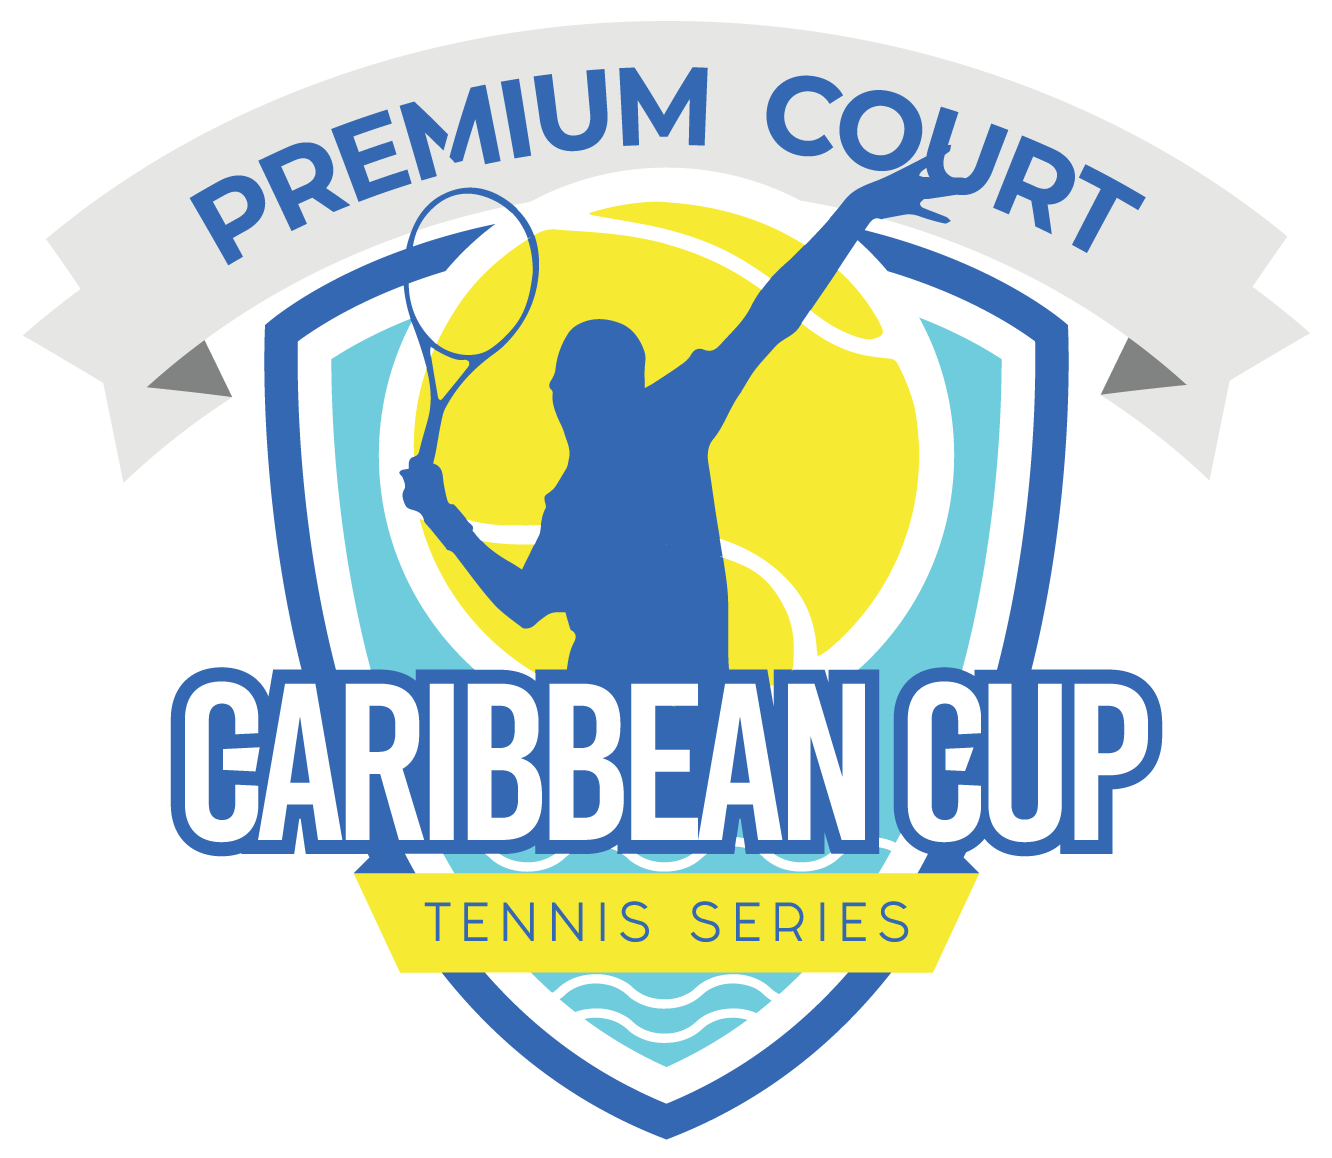 Caribbean Cup Tennis Series